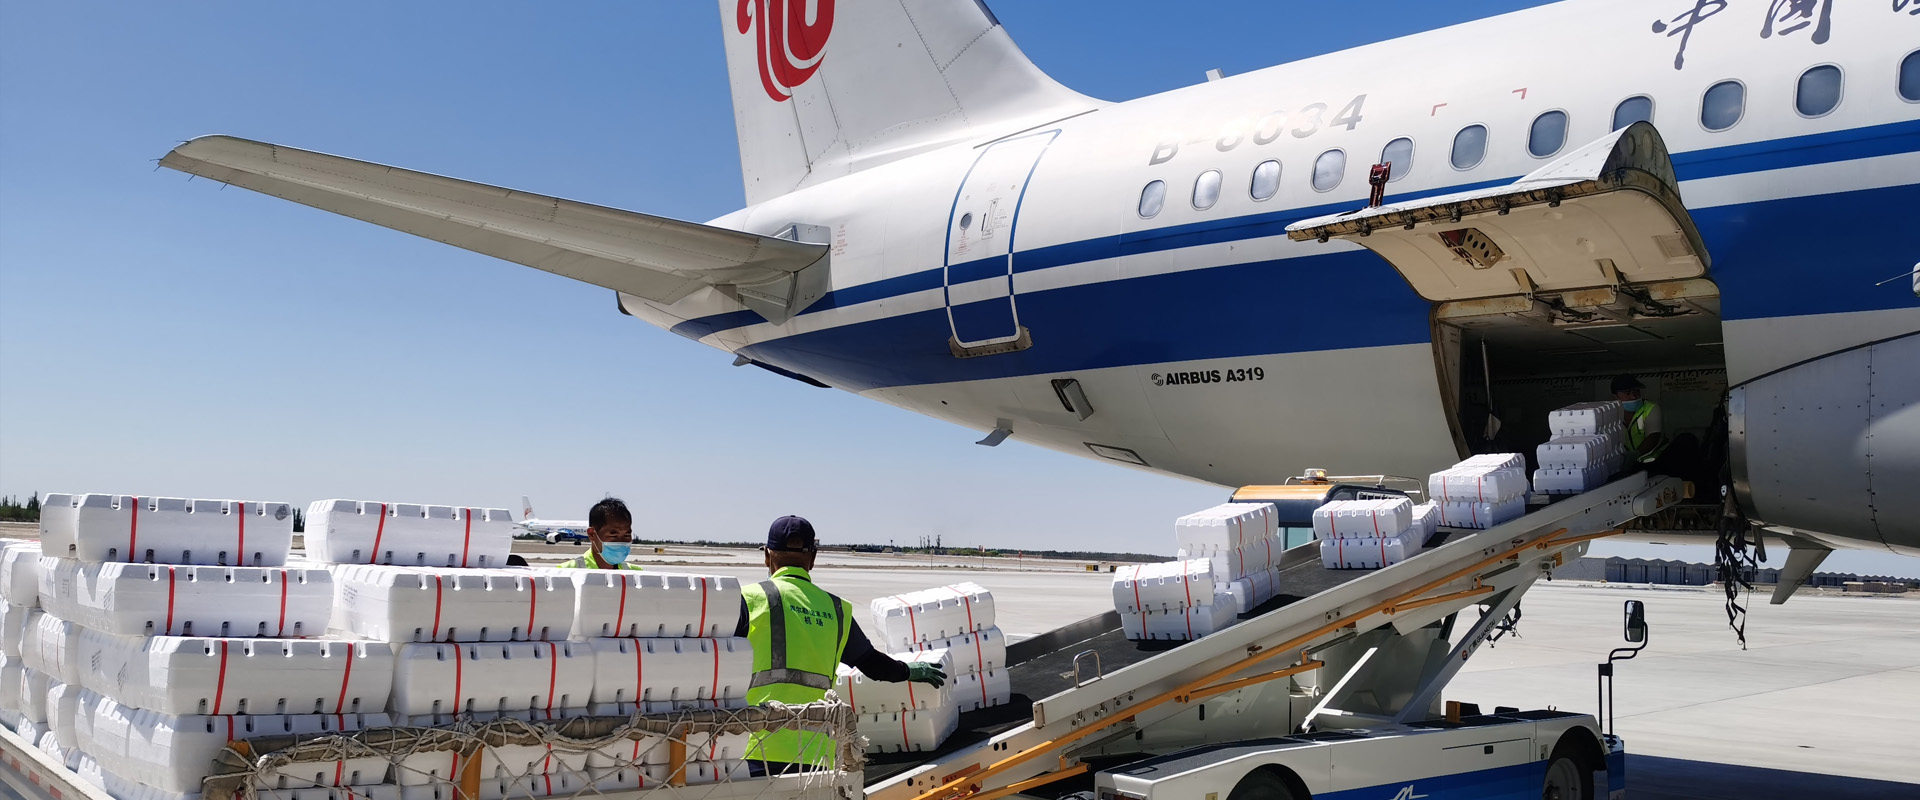 <p>憑借遍布全球的空運物流供應商網絡，</p><p>我們可以為您的貨物按時到達為使命，</p><p>提供最佳的中國南京航空貨運代理解決方案。</p>